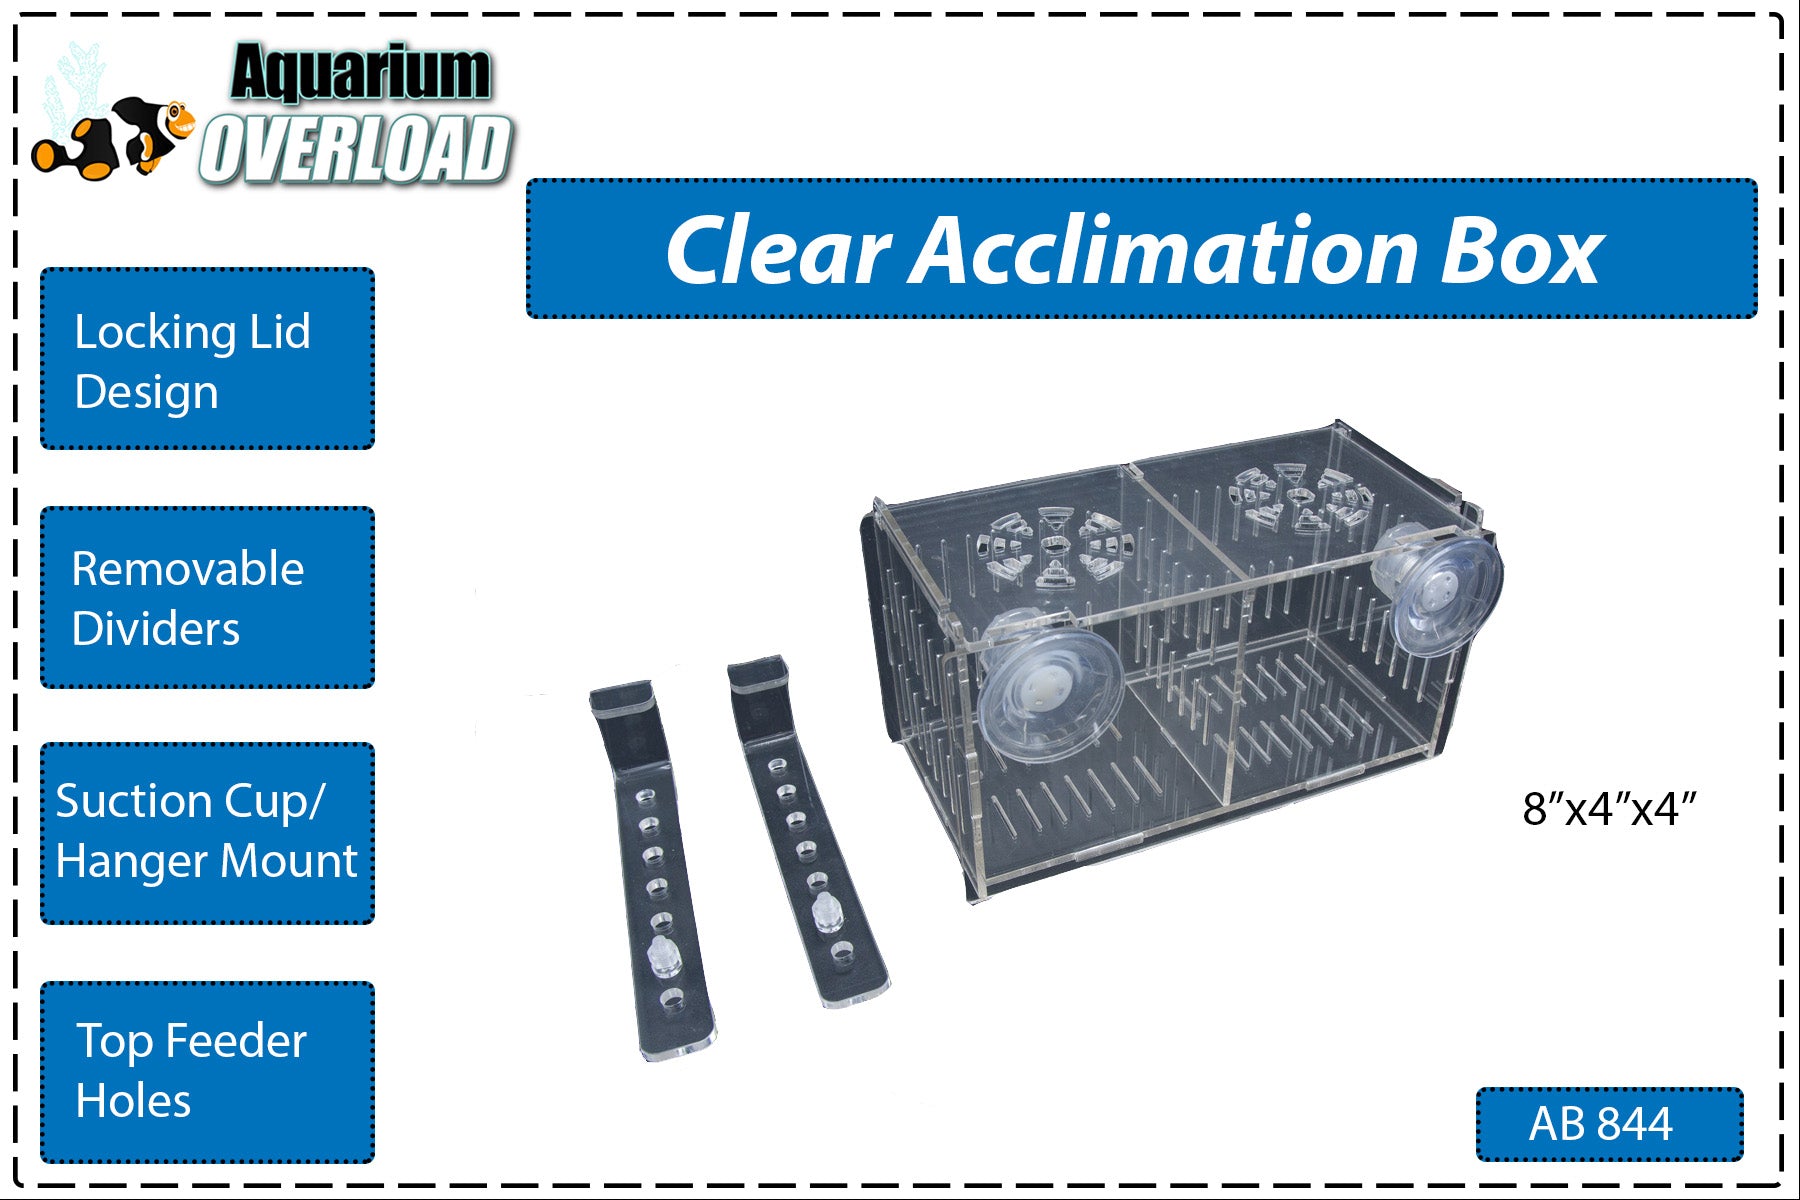 Aquarium Overload Acclimation Boxes